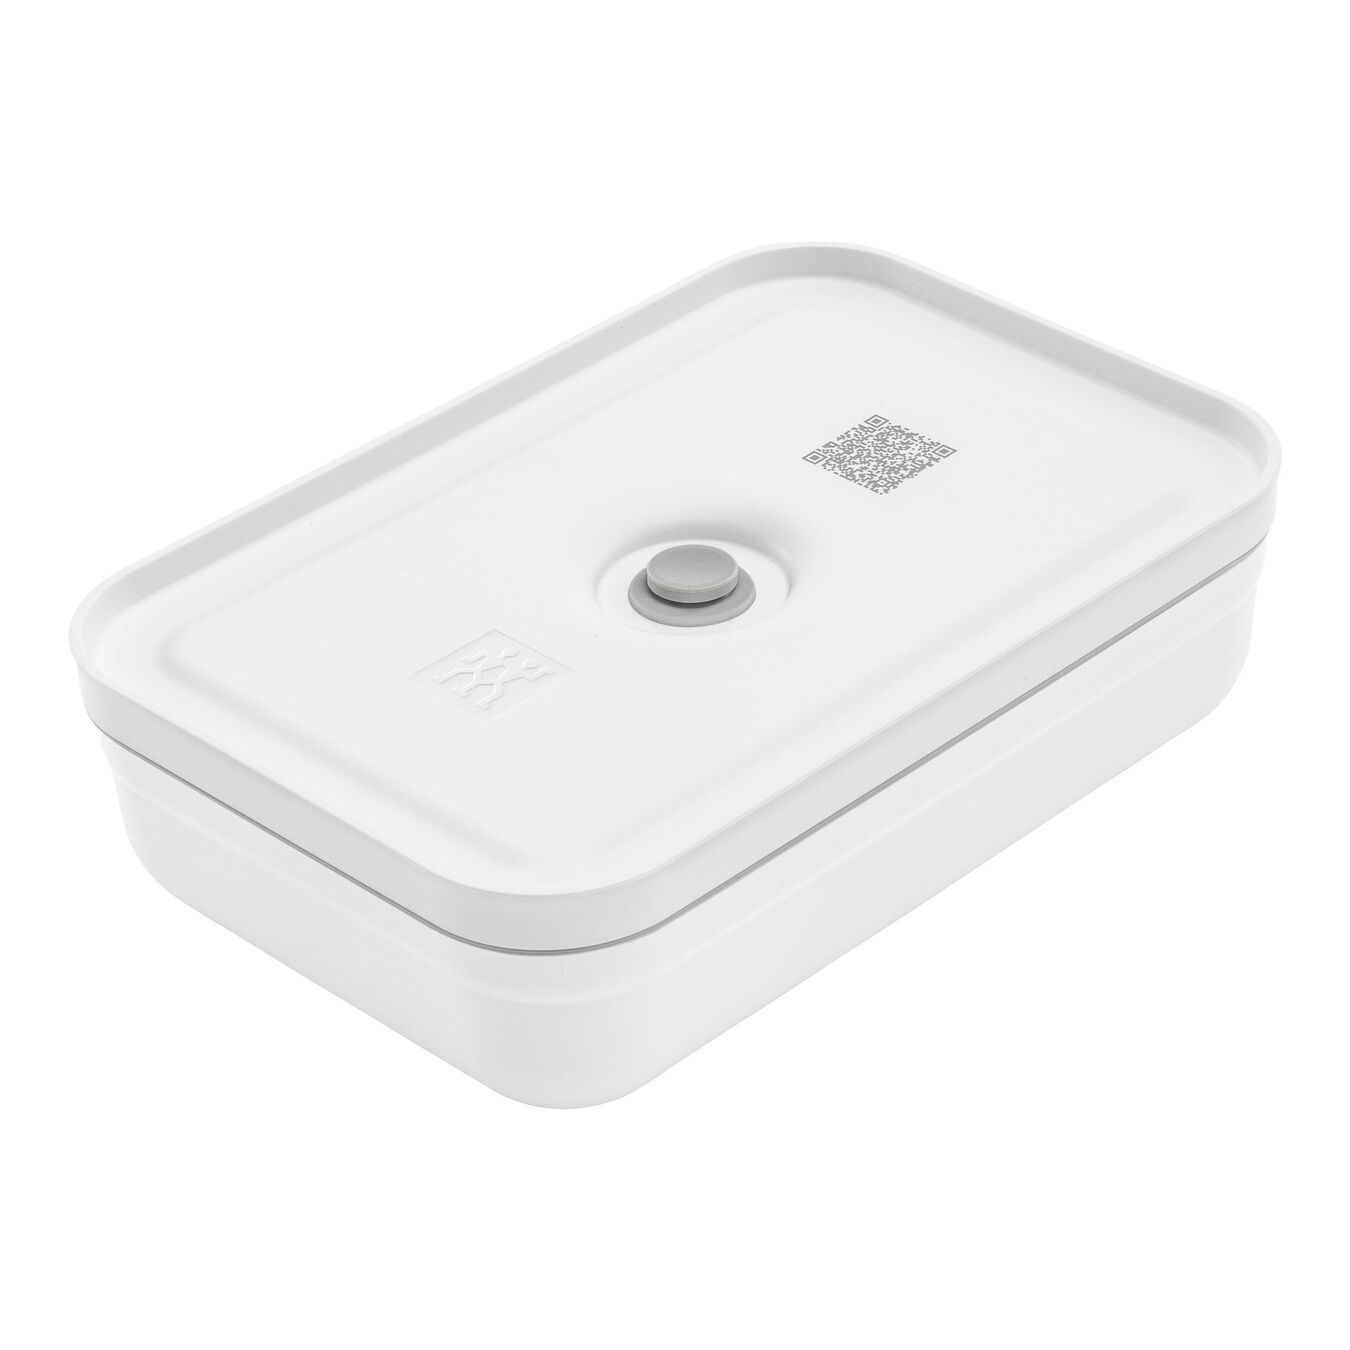 Lunch box sous-vide L plate, Plastique, Blanc-Gris,,large 1